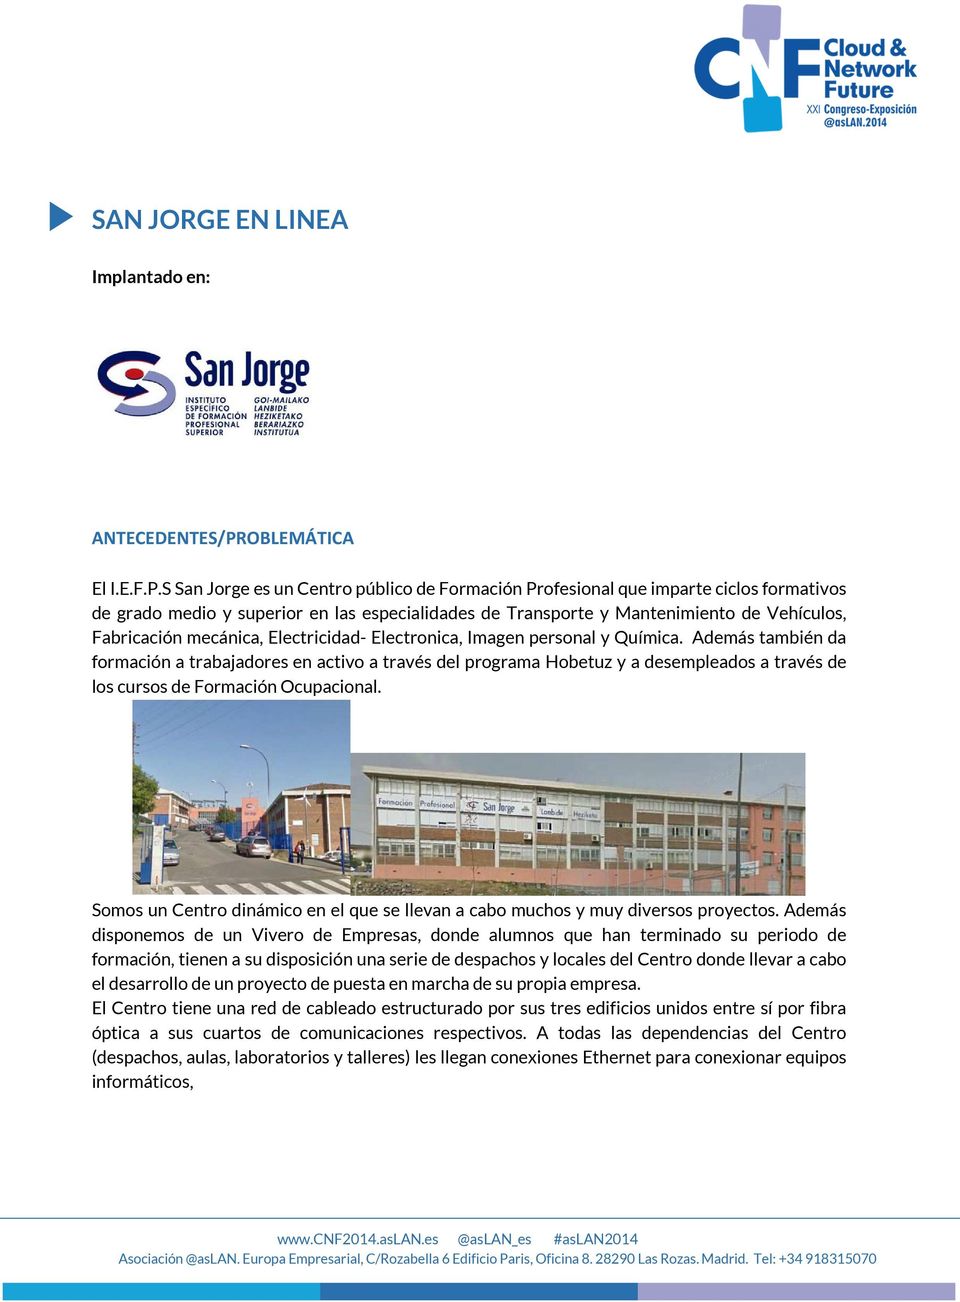 S San Jorge es un Centro público de Formación Profesional que imparte ciclos formativos de grado medio y superior en las especialidades de Transporte y Mantenimiento de Vehículos, Fabricación